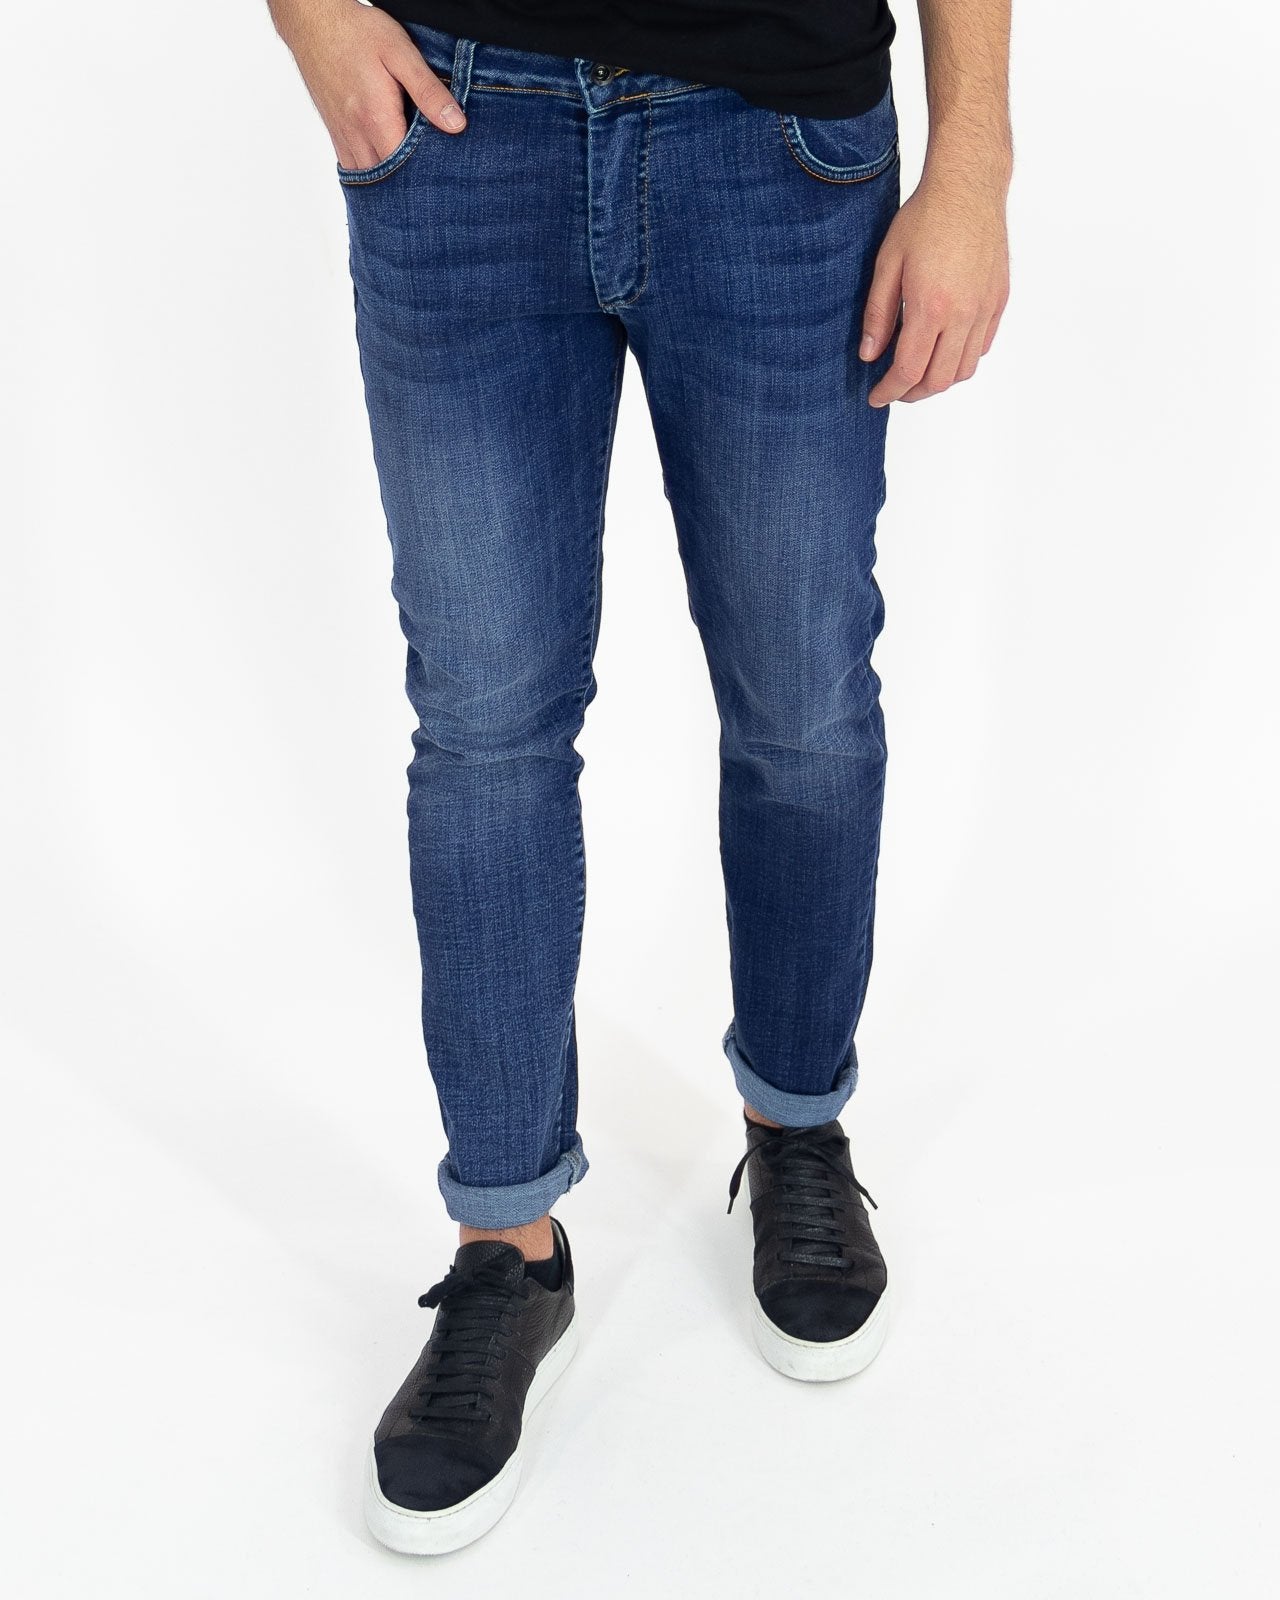 Jeans cinque tasche vestibilità slim